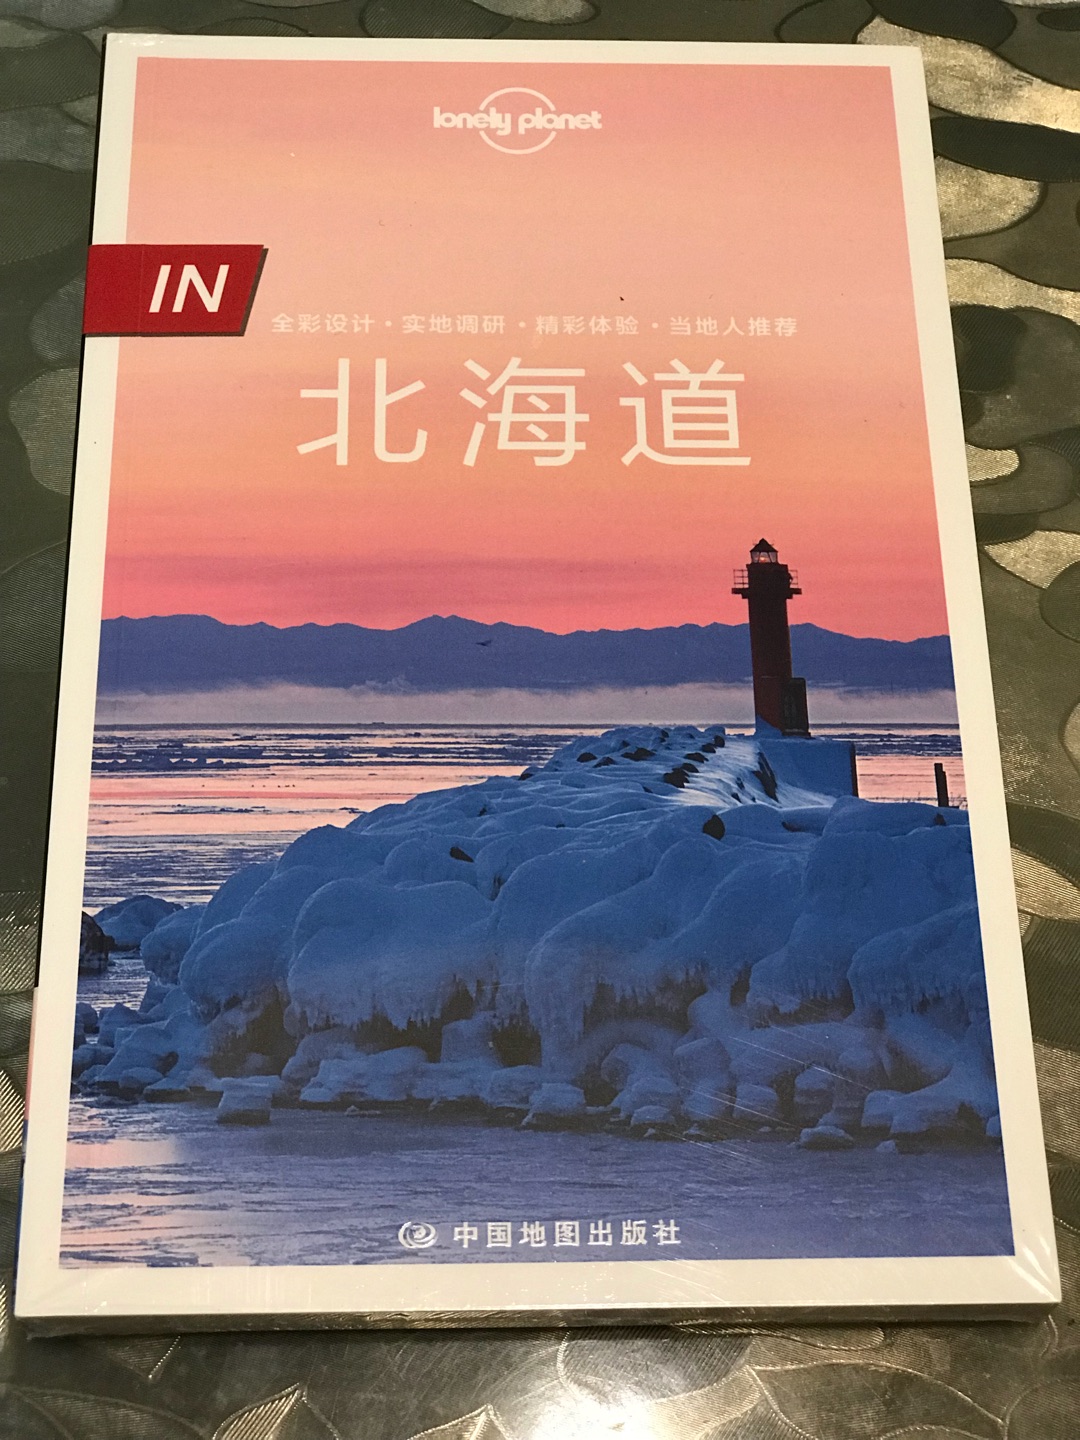 要去北海道，特别买了这本书参考，喜欢孤独星球的书籍，希望看后能对旅行有较大帮助。另外，对快递小哥的周到热情服务表示感谢。